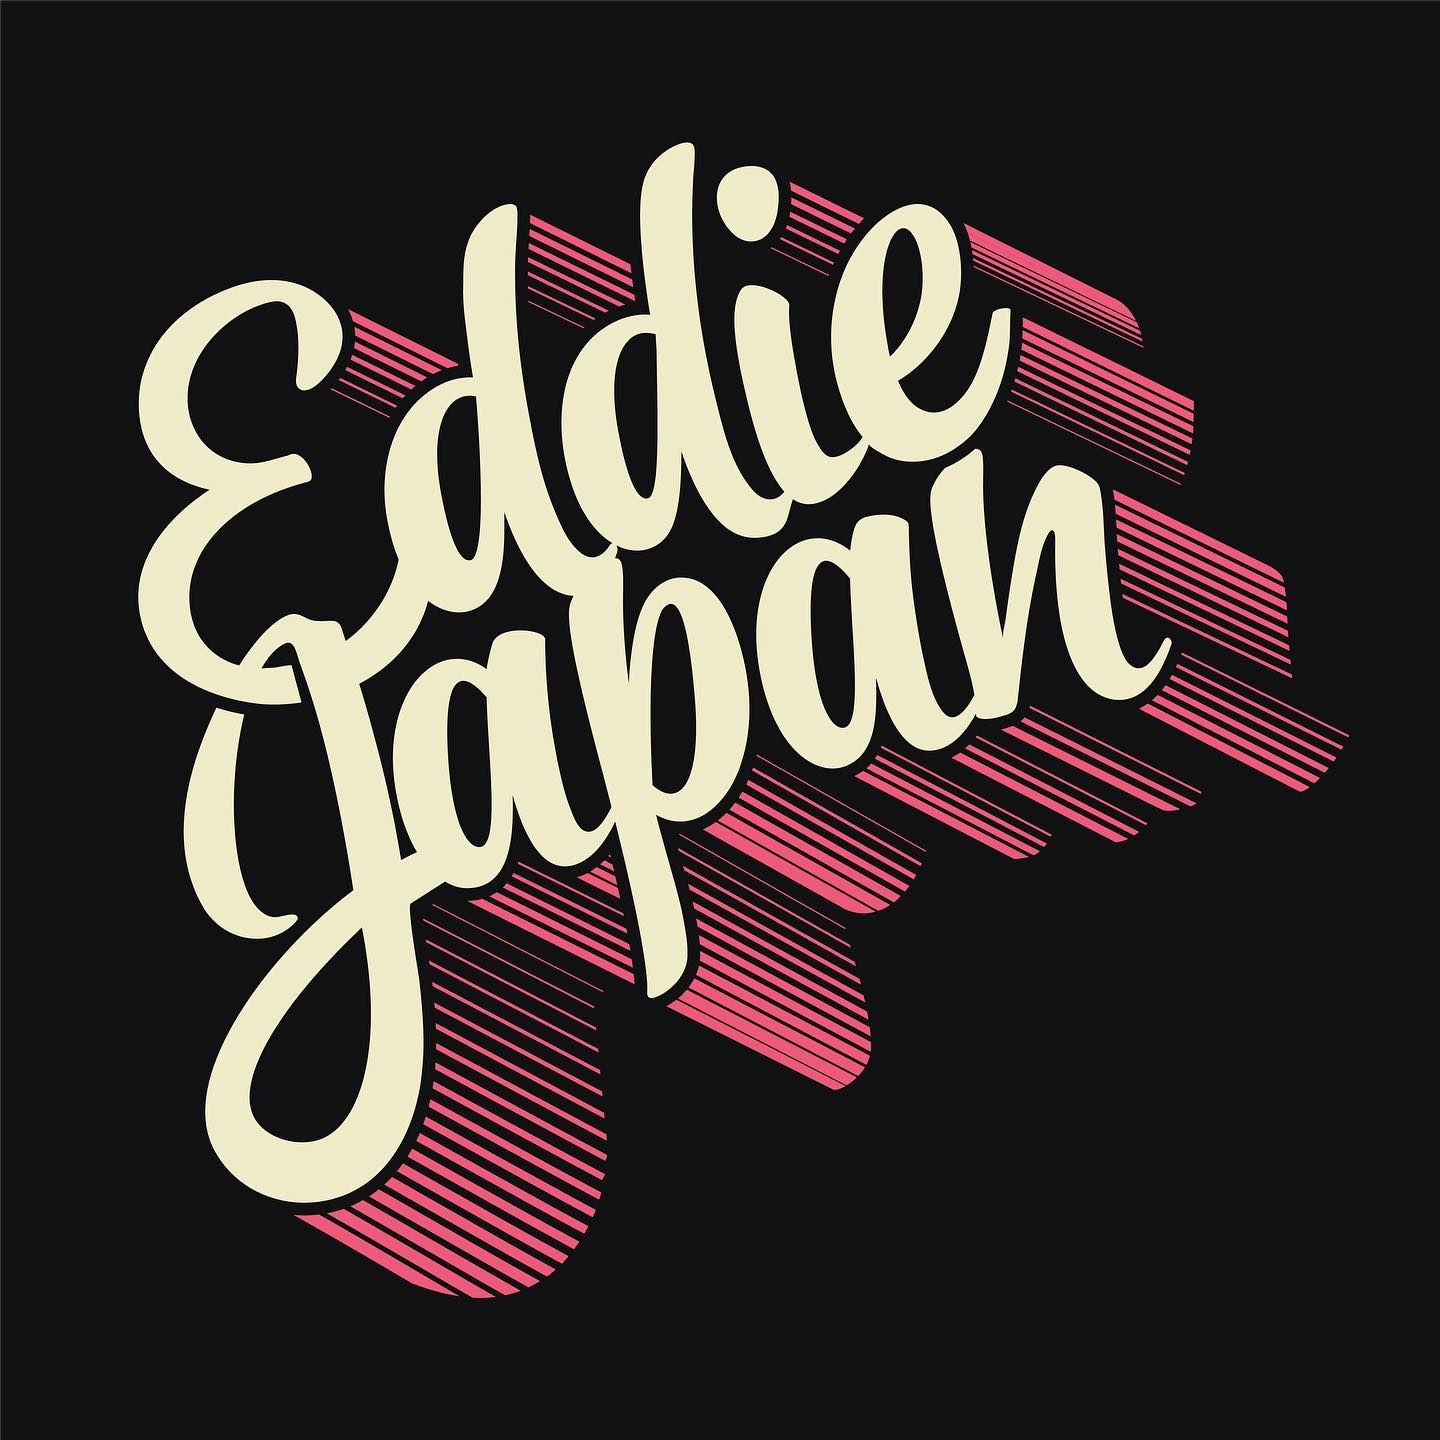 Eddie Japan